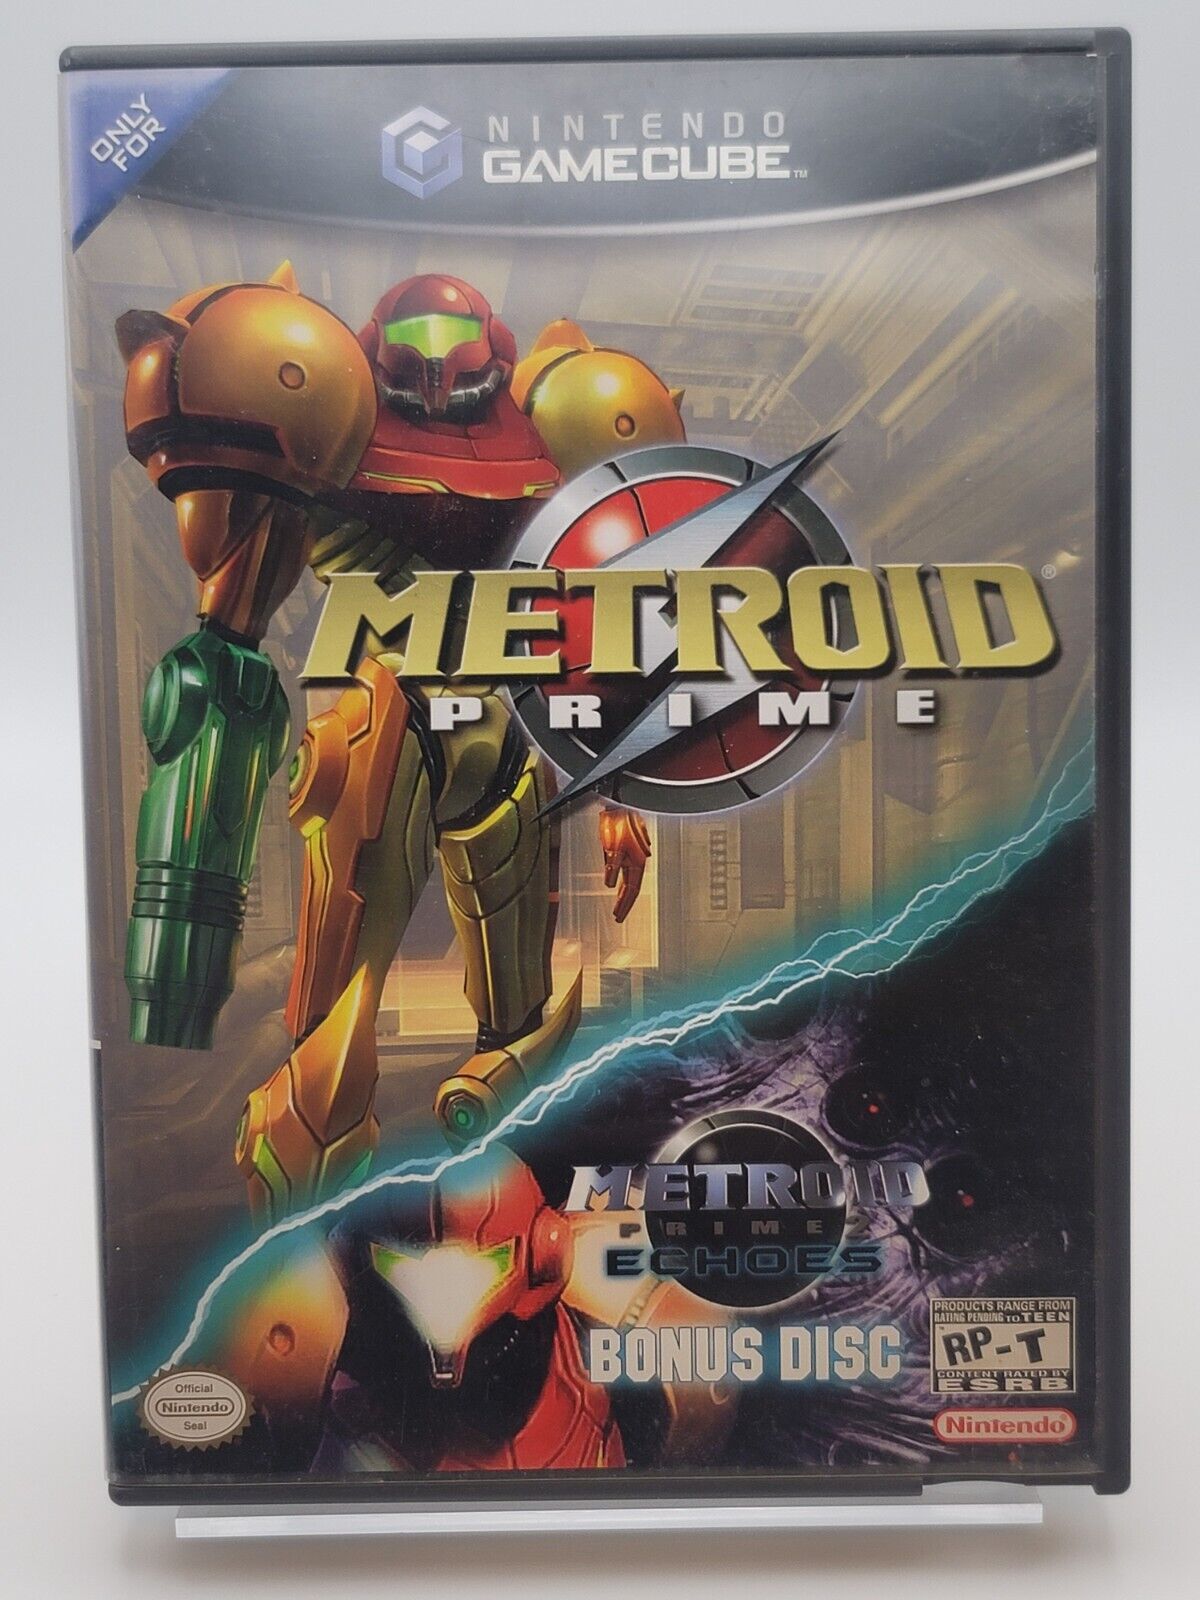 Nintendo Gamecube - Metroid Prime /w Metroid Prime Echoes Bonus Disc